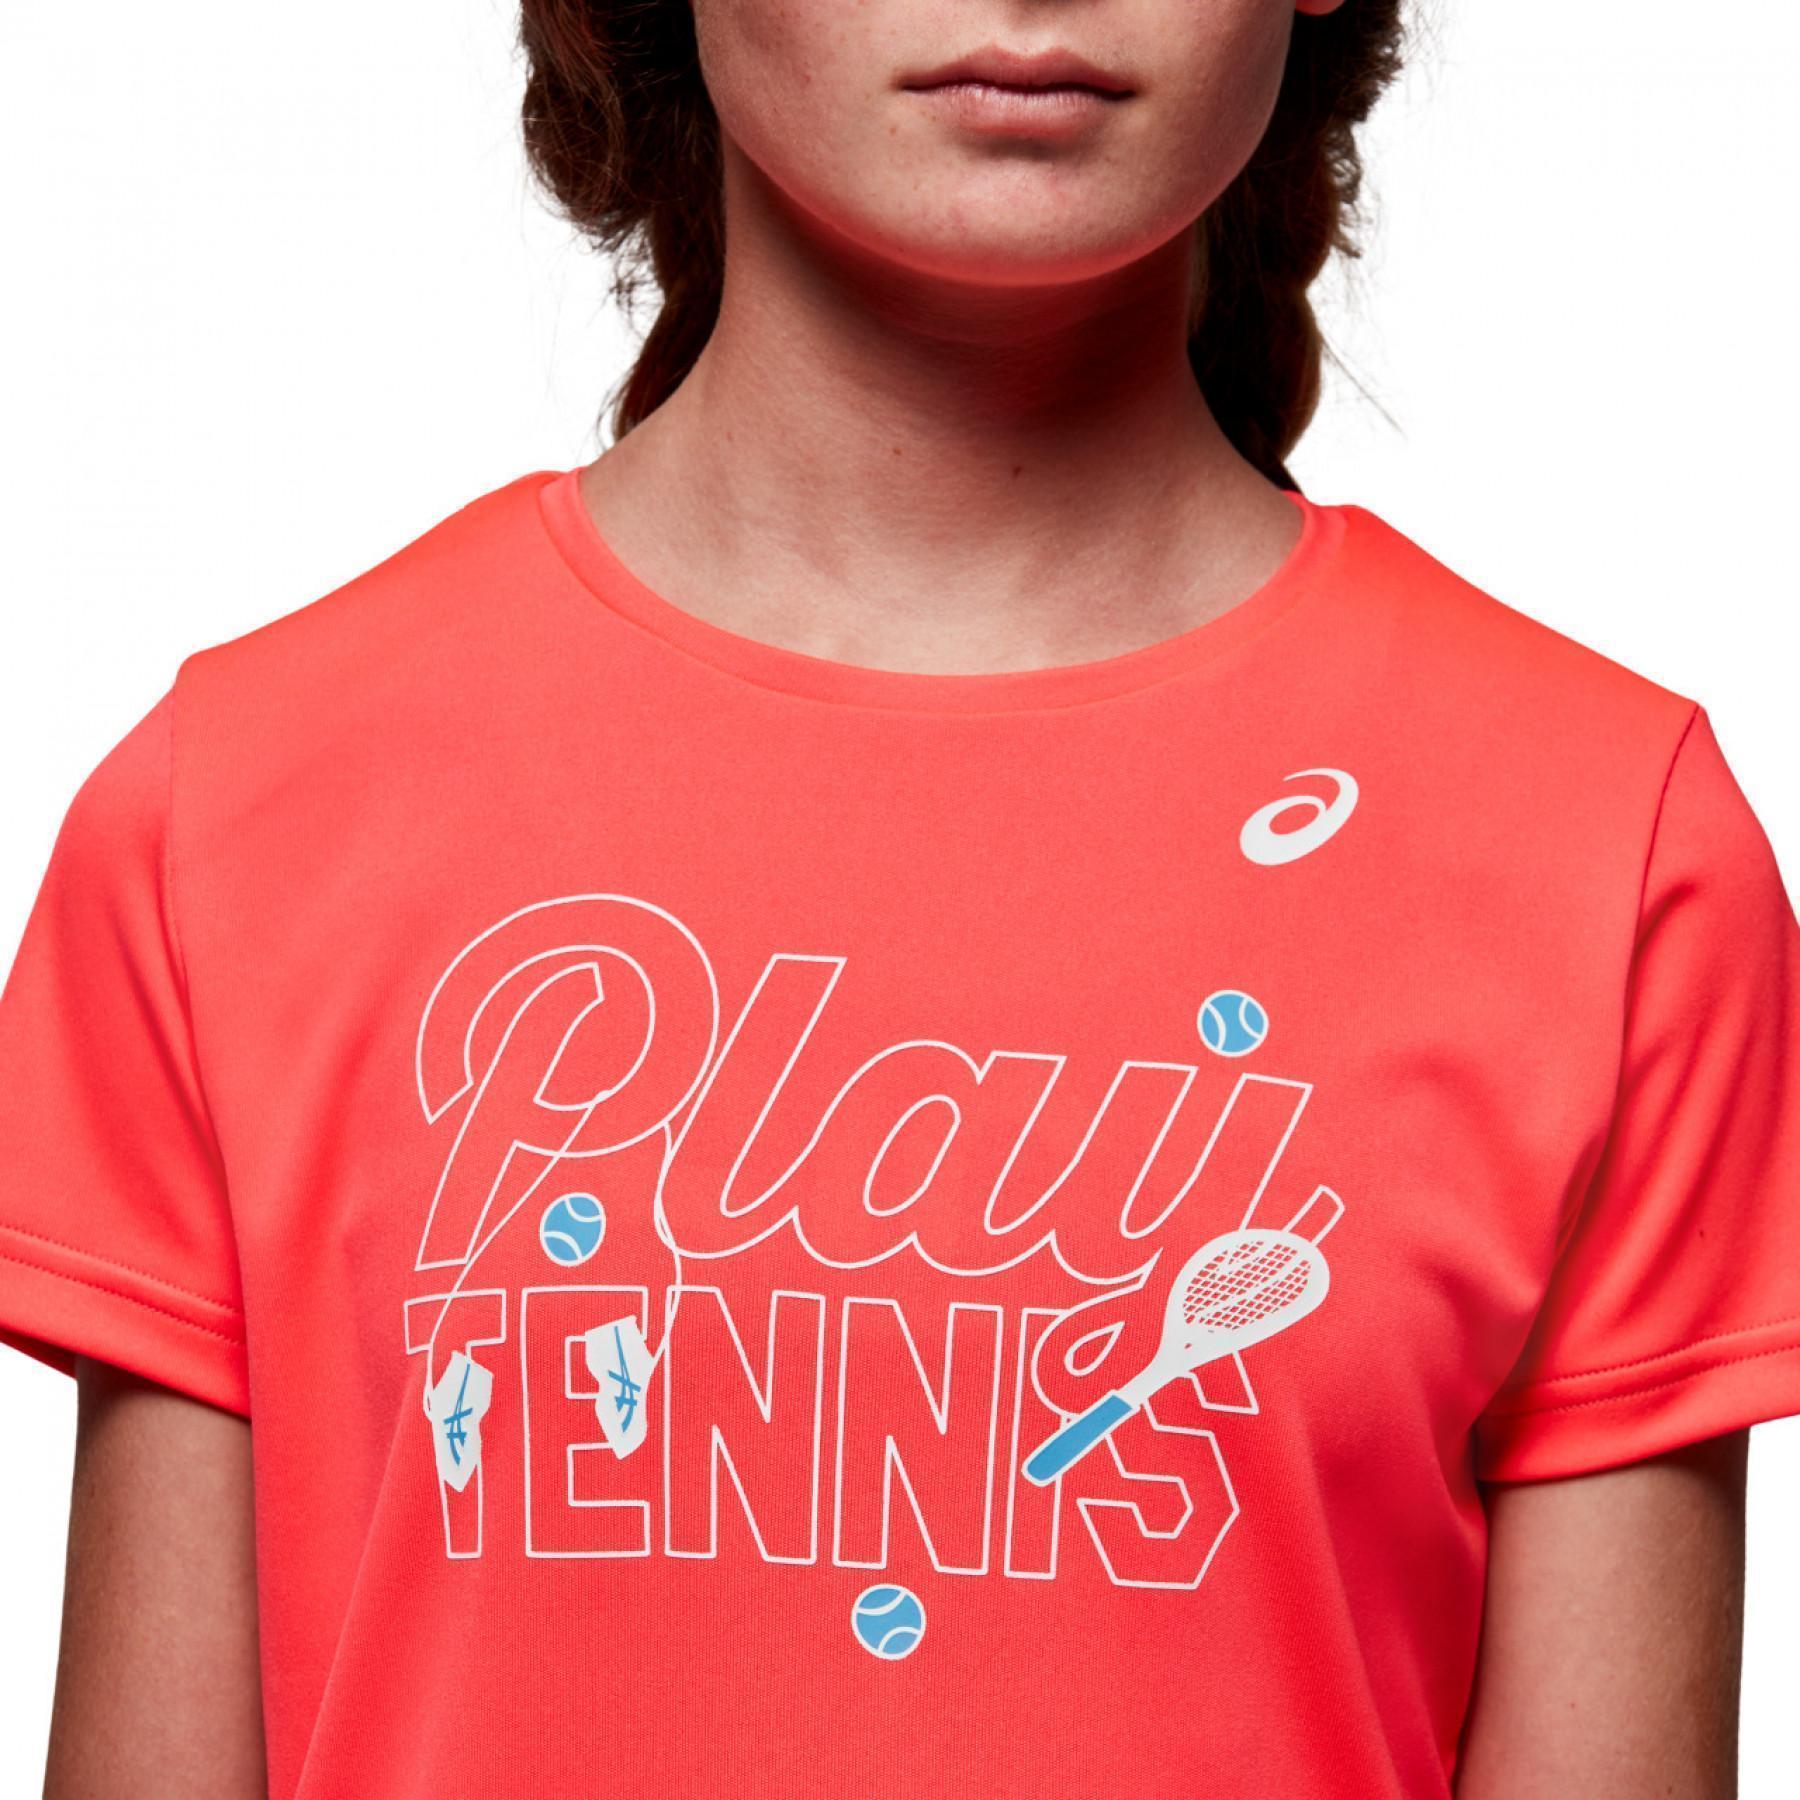 Girl's T-shirt Asics Tennis GPX